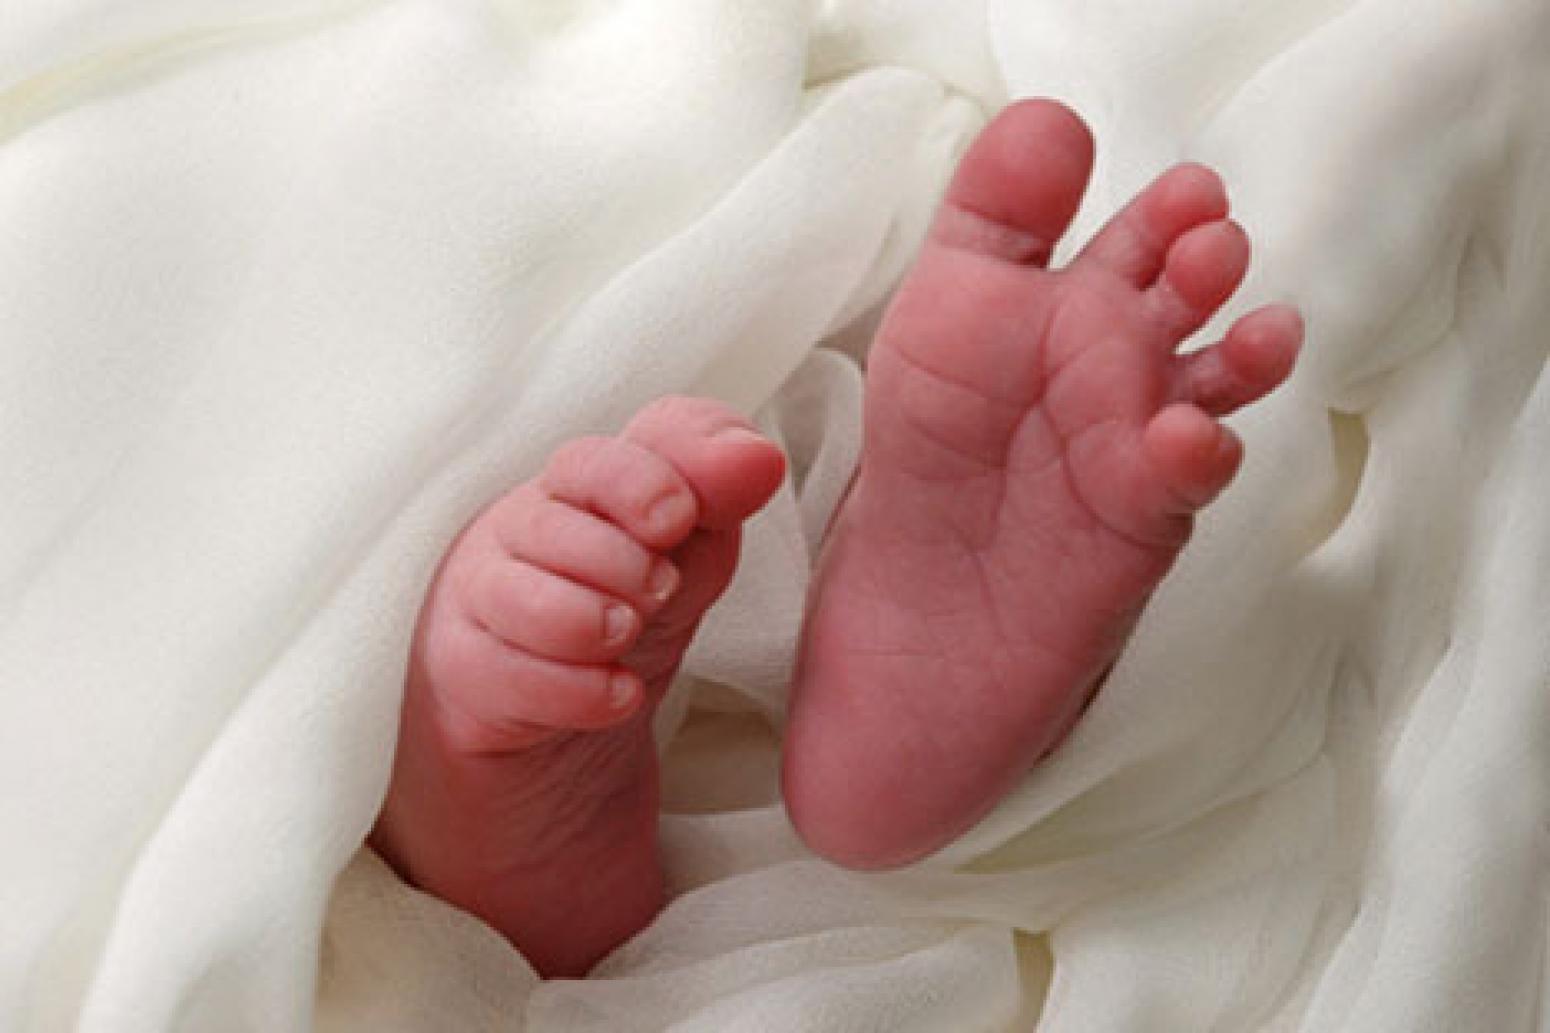 Ножки новорожденного ребенка фото в роддоме